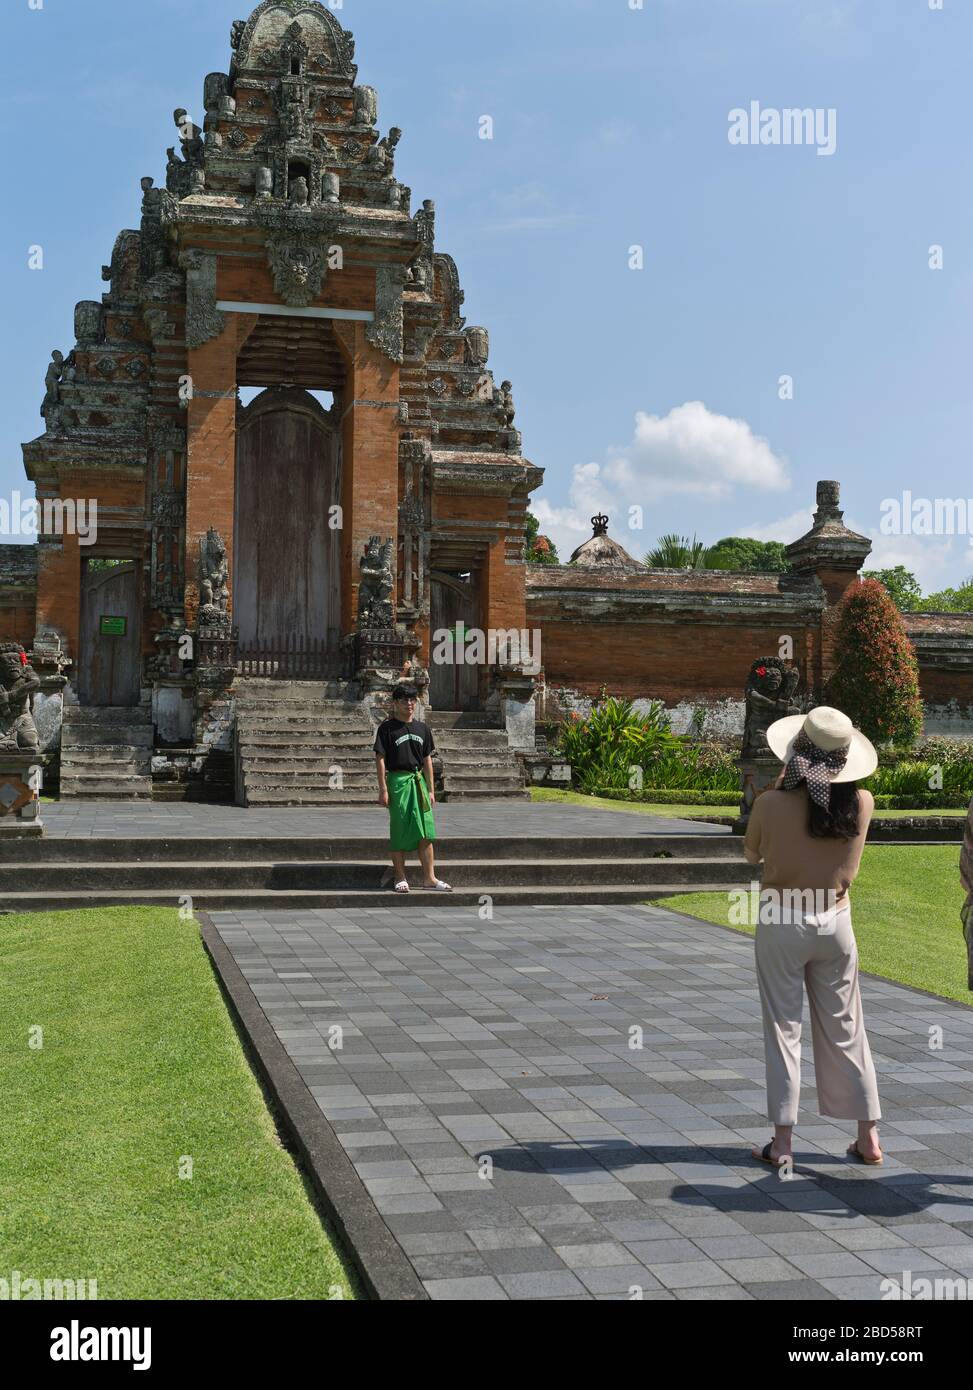 dh Pura Taman Ayun Temple Royal BALI INDONÉSIE touristes photographier Temples hindous de Mengwi balinais architecture Paduraksa visite de la porte hindouiste Banque D'Images